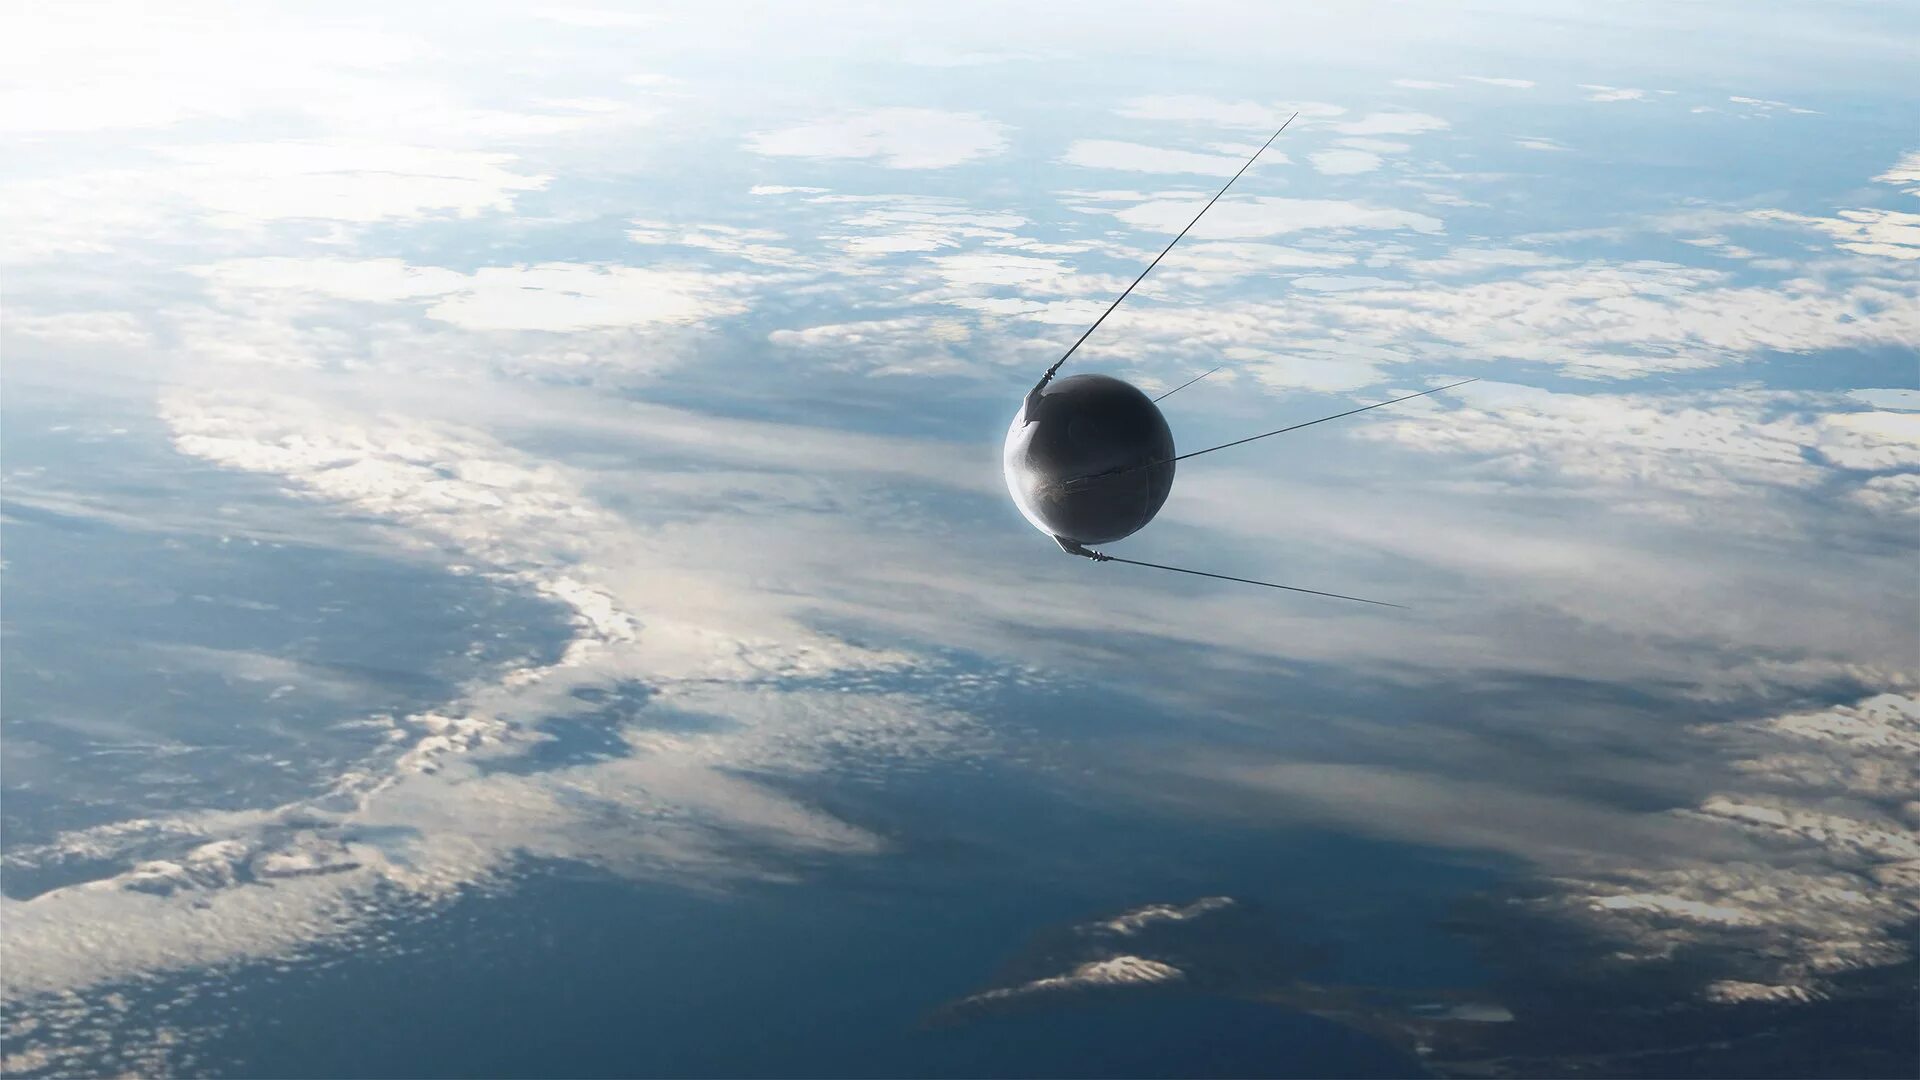 Фото первого искусственного спутника. Спутник 1 первый искусственный Спутник земли. Первый искусственный Спутник земли 1957. ПС-1 Спутник. Спутник 1 1957.